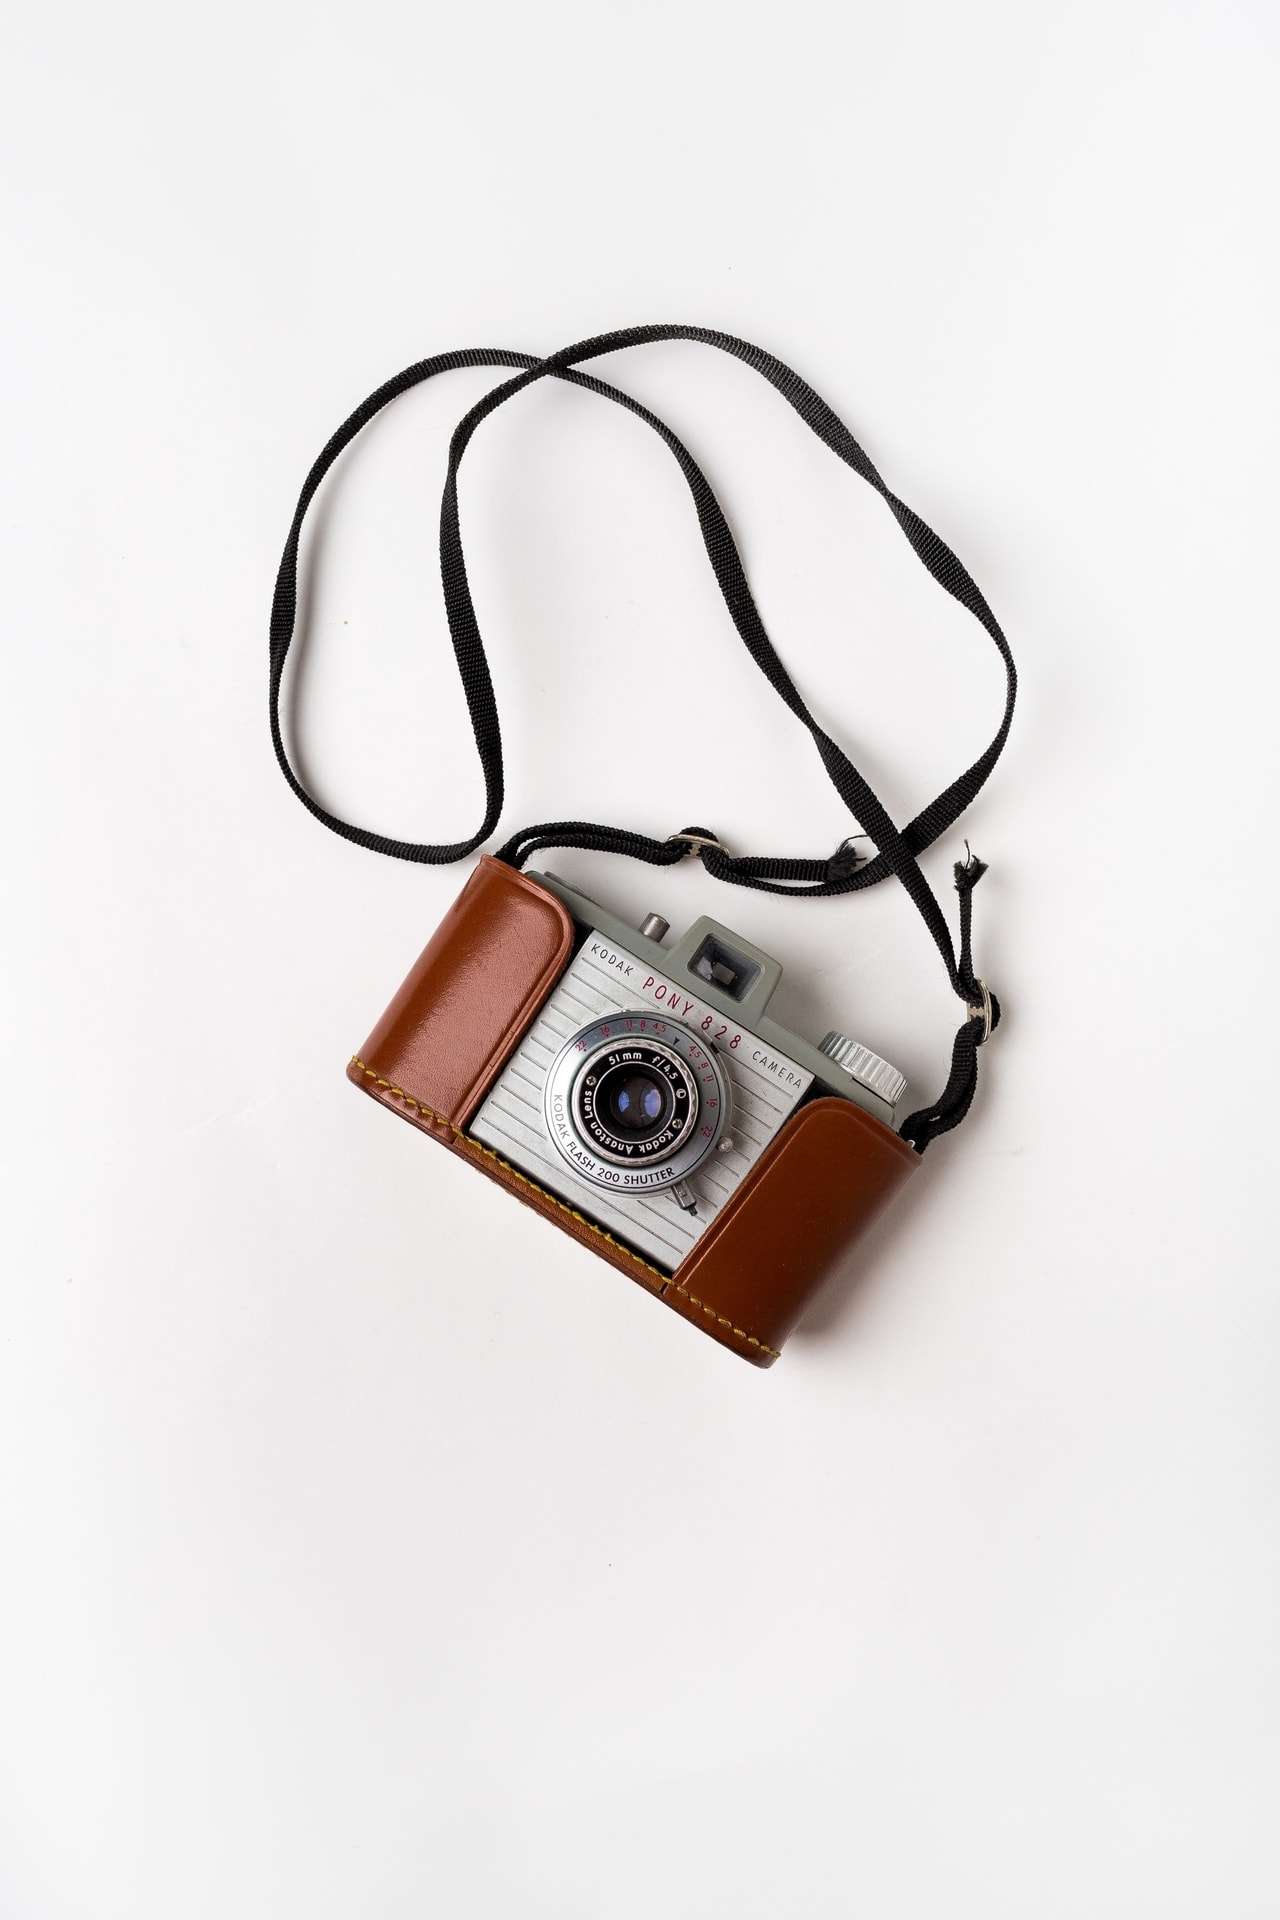 Aparat fotograficzny Kodak ze skórzanym etui i paskiem w stylu vintage